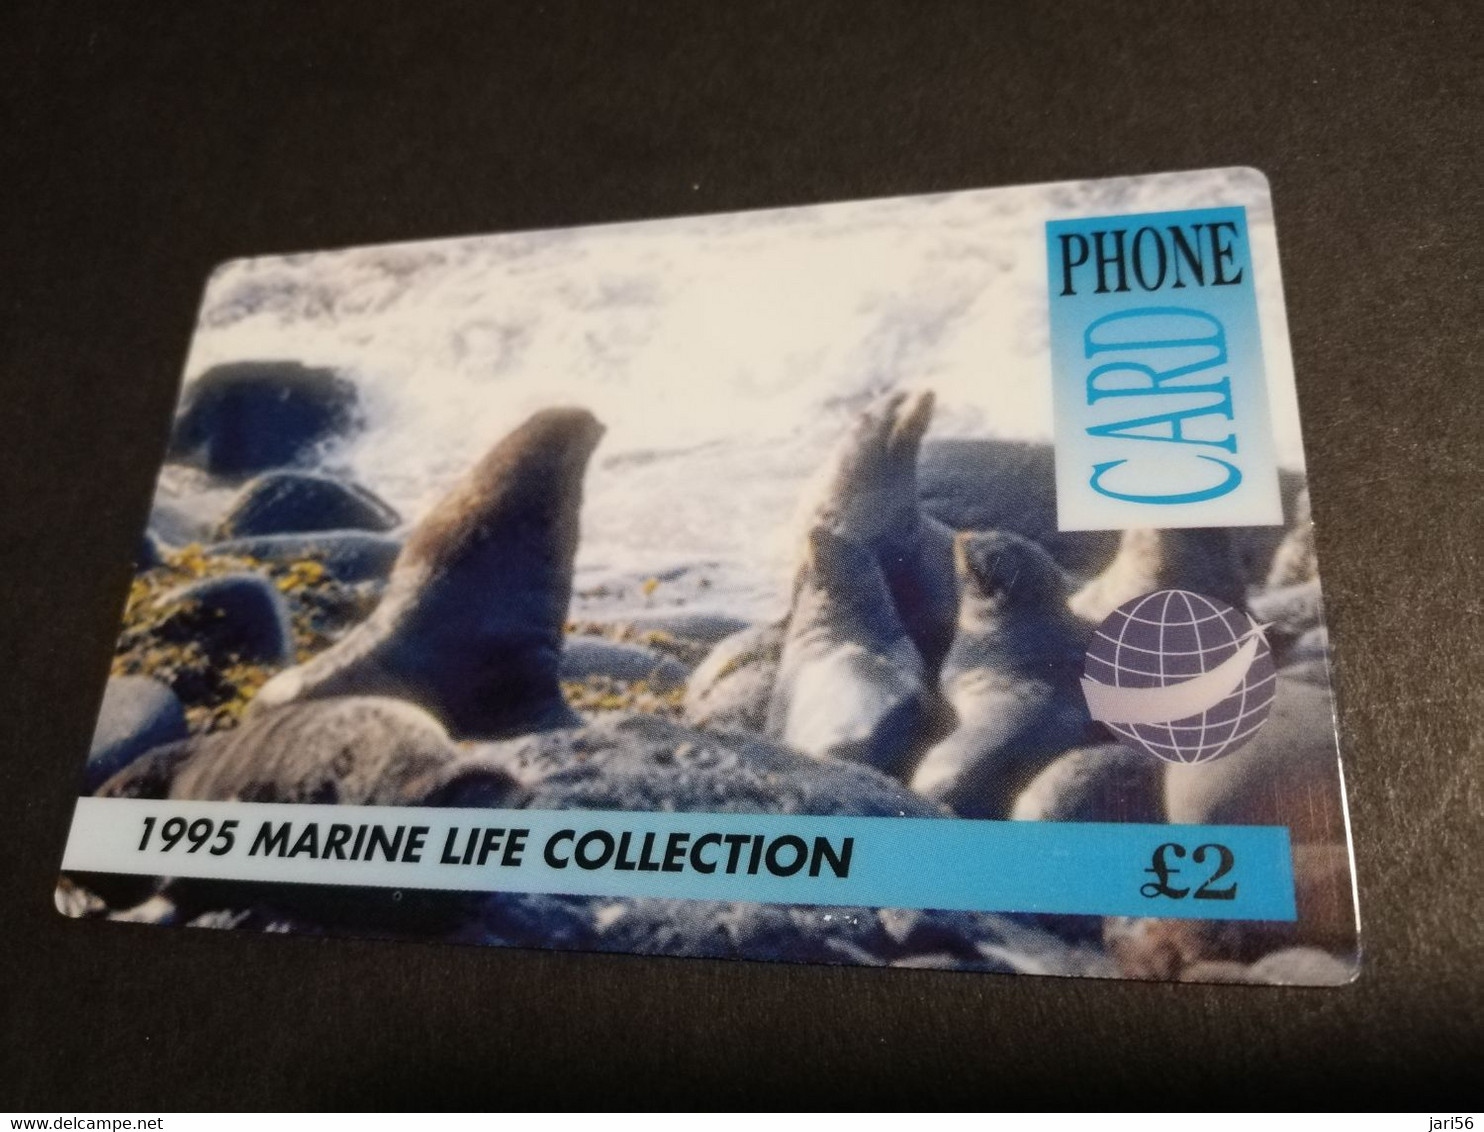 GREAT BRITAIN   2 POUND   MARINE LIFE COLLECTION SEALION     DIT PHONECARD    PREPAID CARD      **5925** - [10] Sammlungen